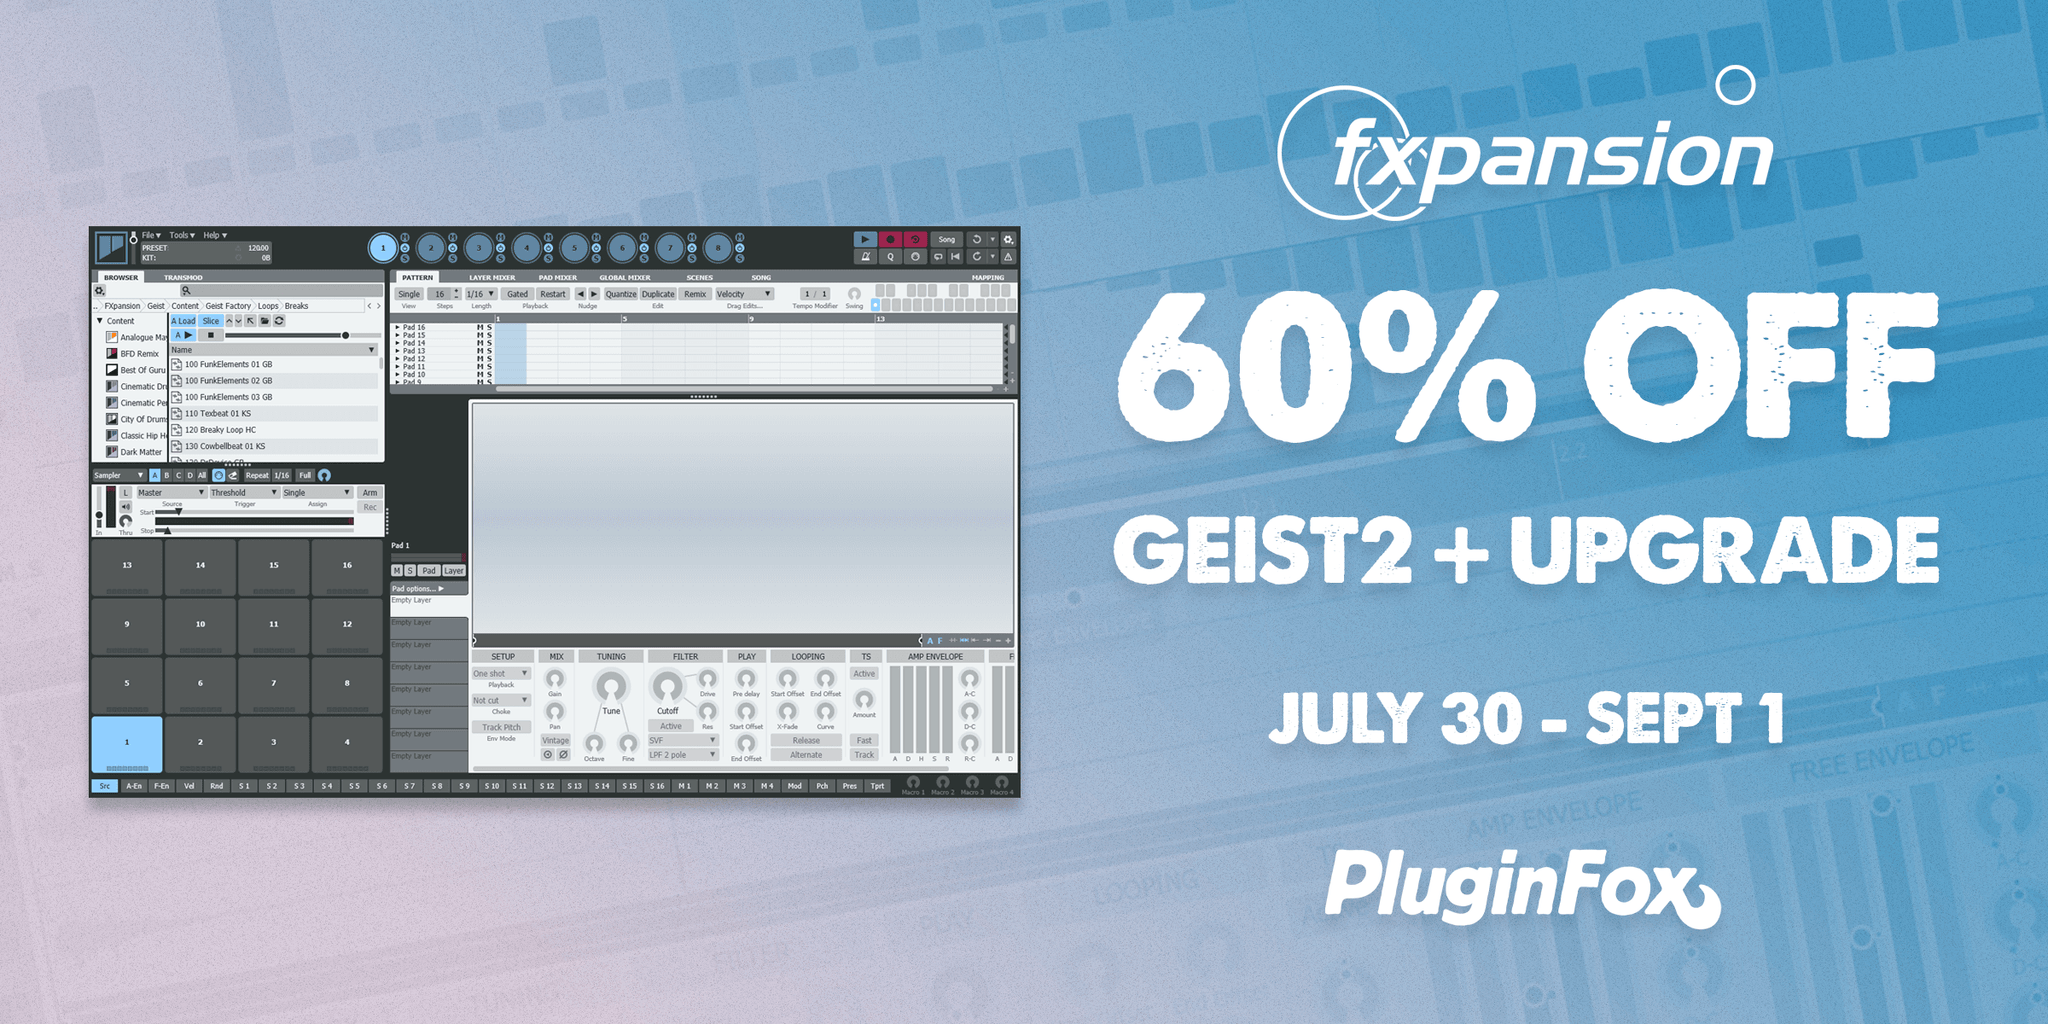 FXPansion Geist2 Sale - July 30 - Aug 31